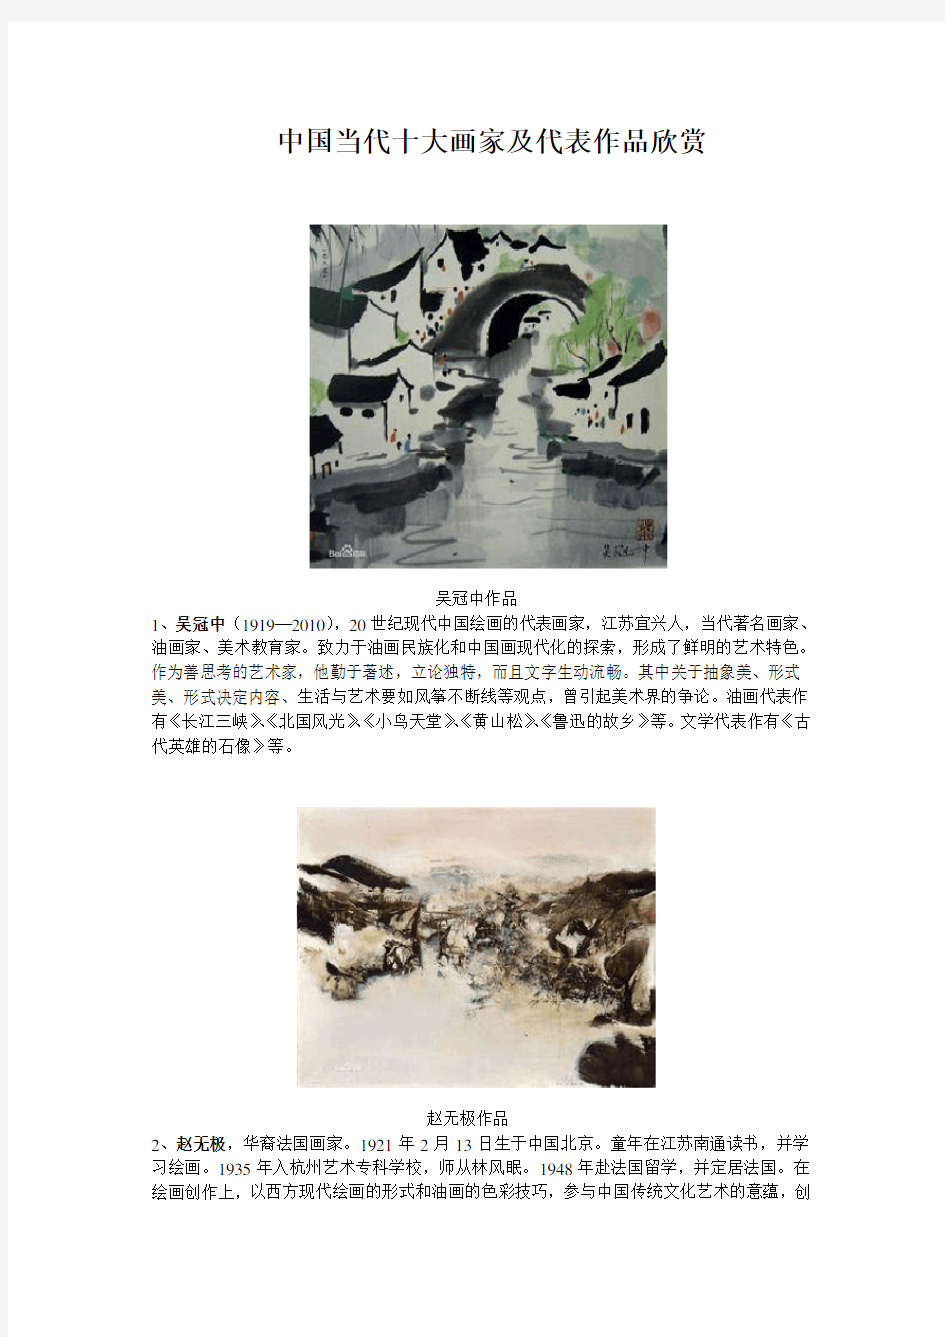 中国当代十大画家及代表作品欣赏